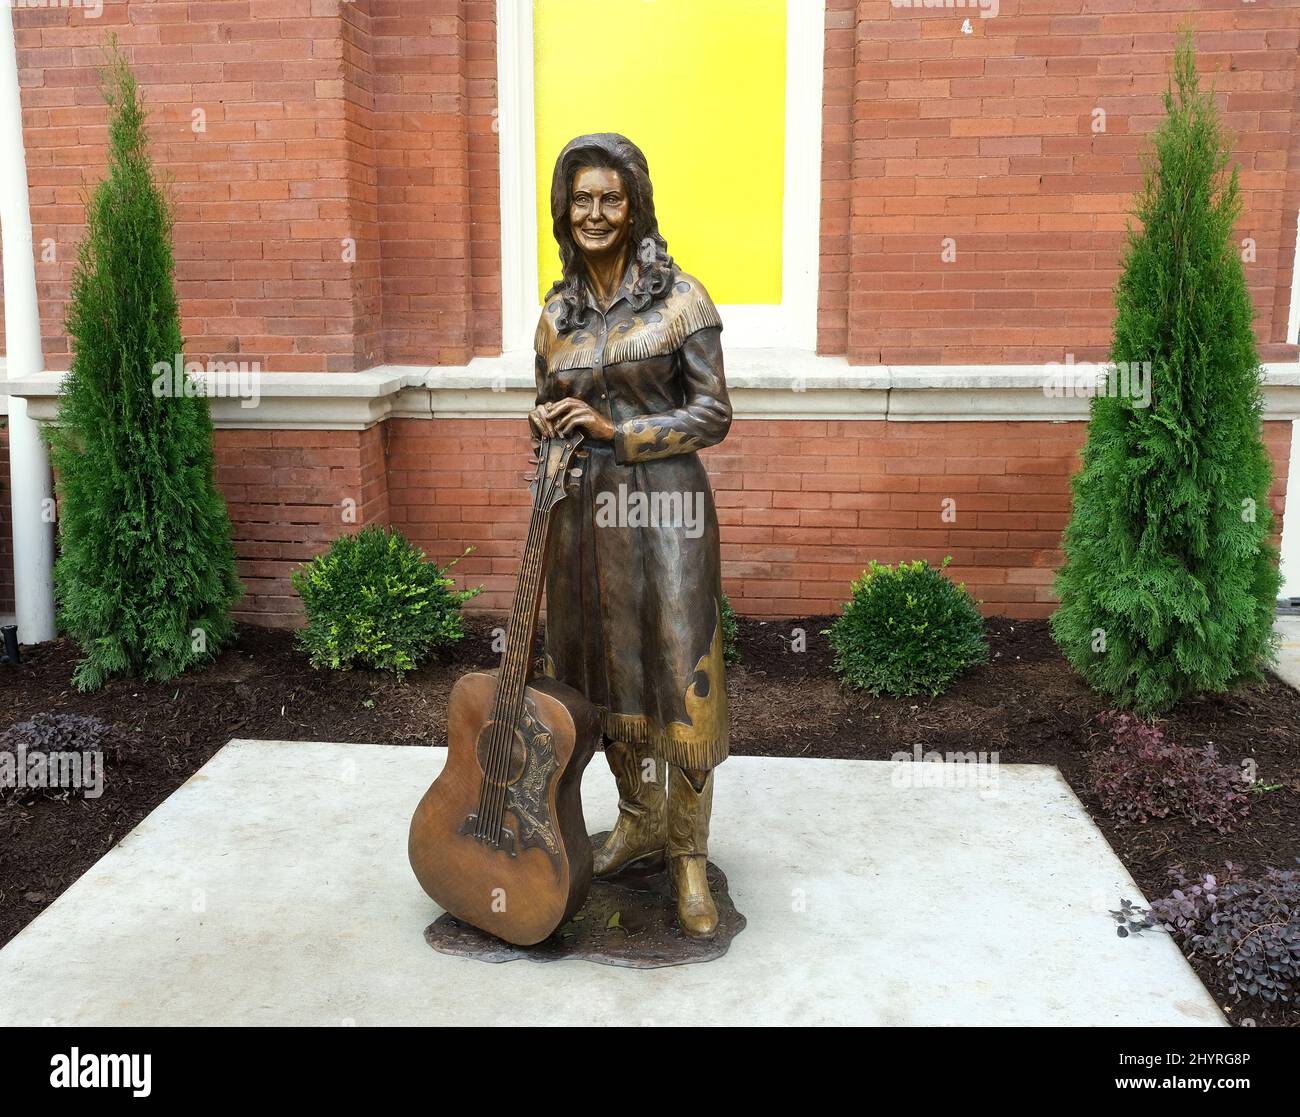 Die Country-Musik-Ikone Loretta Lynn ist die erste Frau, die vor dem berühmten Ryman Auditorium in Nashville eine Statue verdient Stockfoto